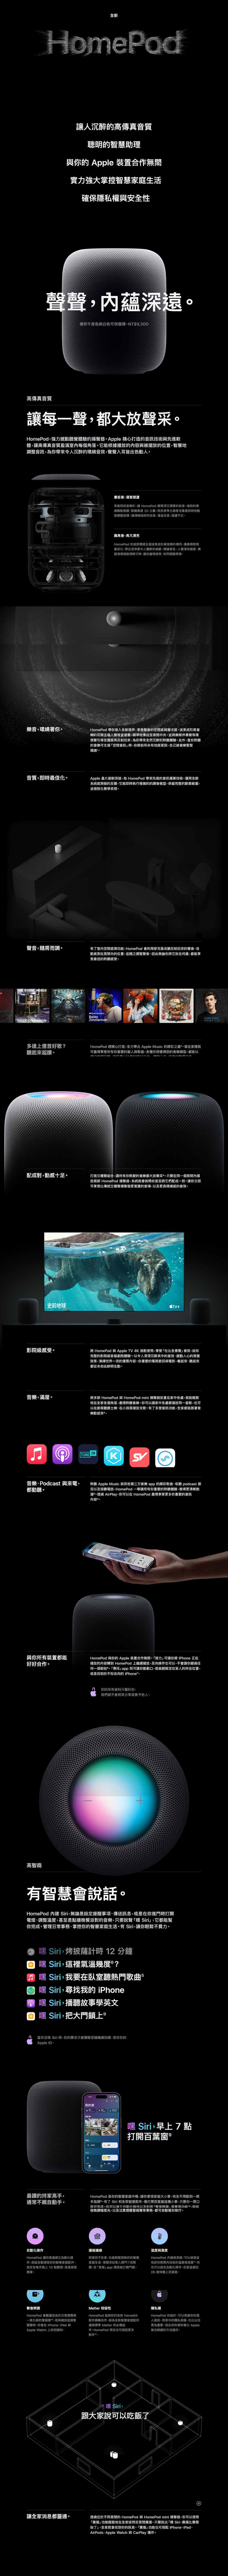 蘋果豪華劇院組】HomePod 2兩入組+Apple TV 4K 128G